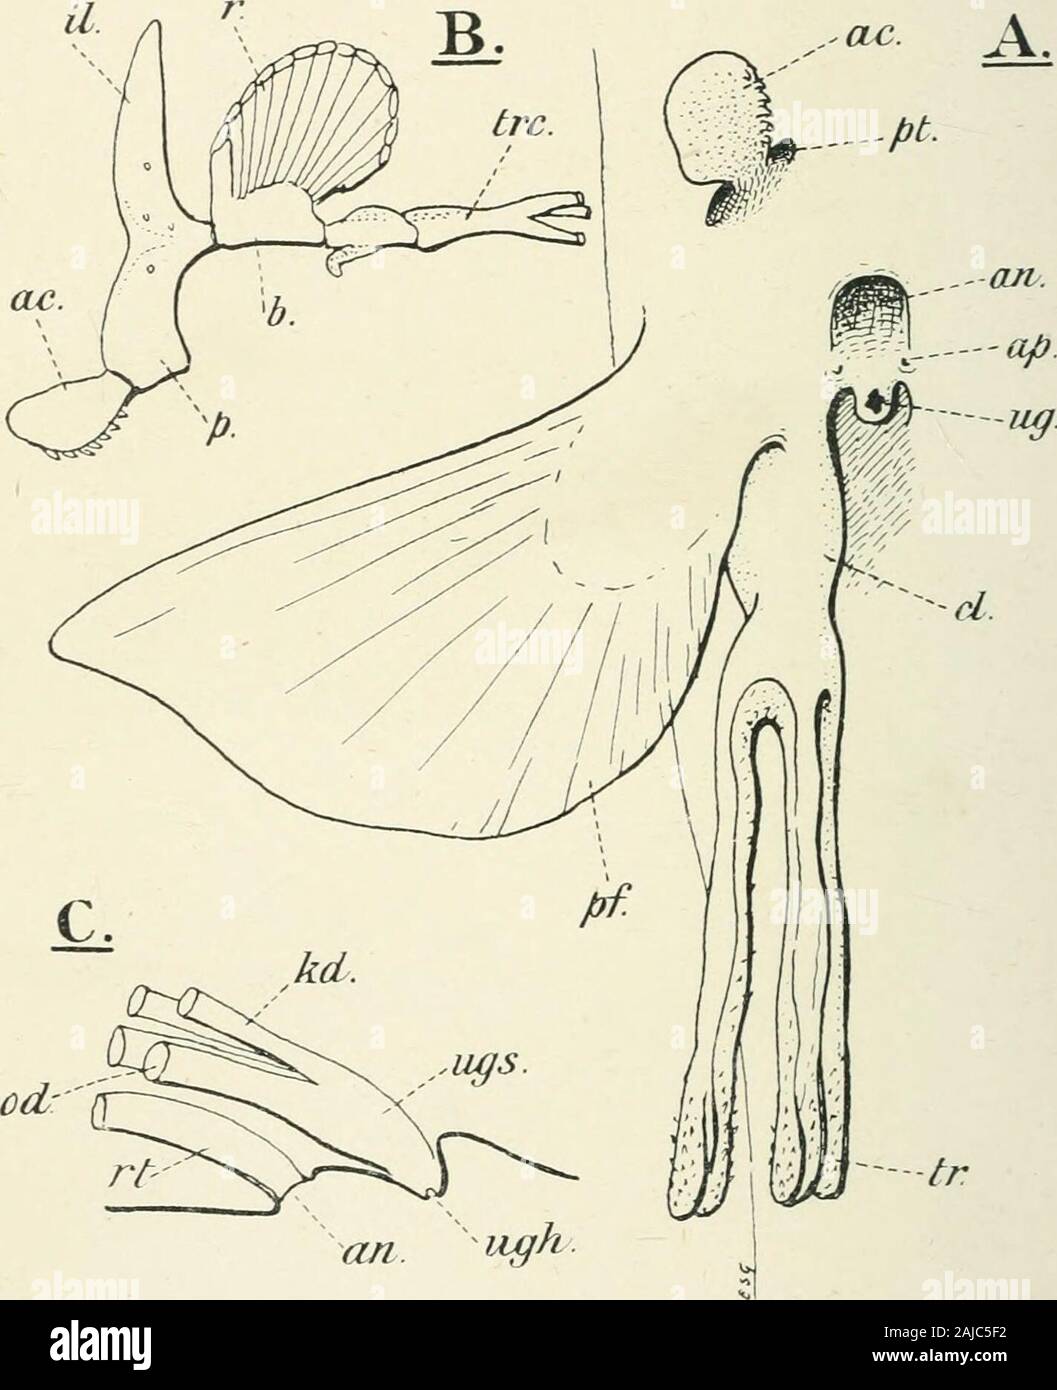 Un trattato di zoologia . Il corpino pettorale è formata di cartilagini stout fusi in themiddle linea ventrale. Essi supportano lo scheletro della pinna, Avhicliis essenzialmente del tipico Selachian tipo, con molti fan-raysattached simile ad un metapterygium (Fig. 134). La pinna pelvica ha un verysimilar ma minore .scheletro (Fig. 138). La cintura pelvica sul 174 HOLOCEPHALI altra, differisce notevolmente da quella del Selachian, in chei due metà non sono fuse e il processo di iliaca è ben sviluppata.Nel maschio un claspei anteriore-, armati con denticles e presentata in ^ac.. Fir.. 130. Chlnwcr Foto Stock